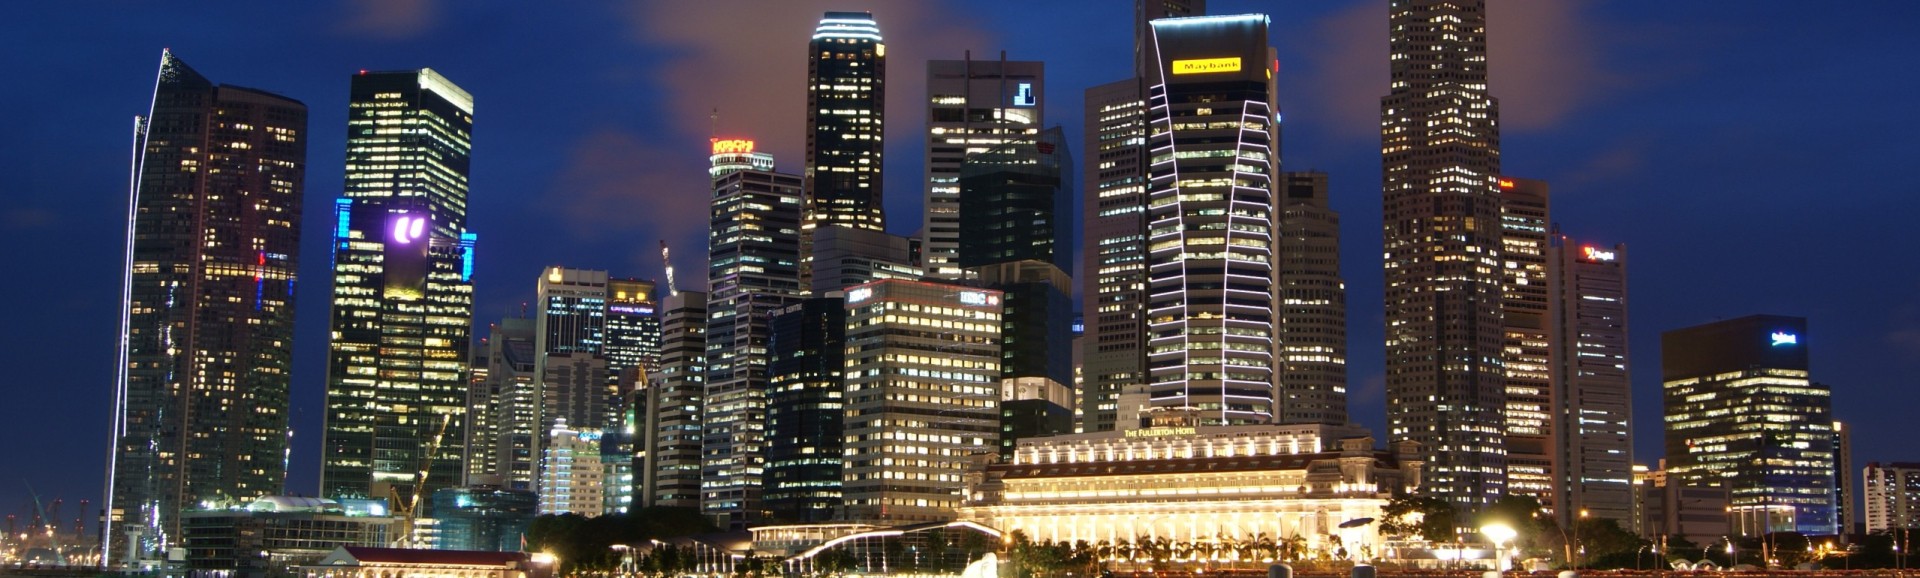 singapore+skyline.jpg